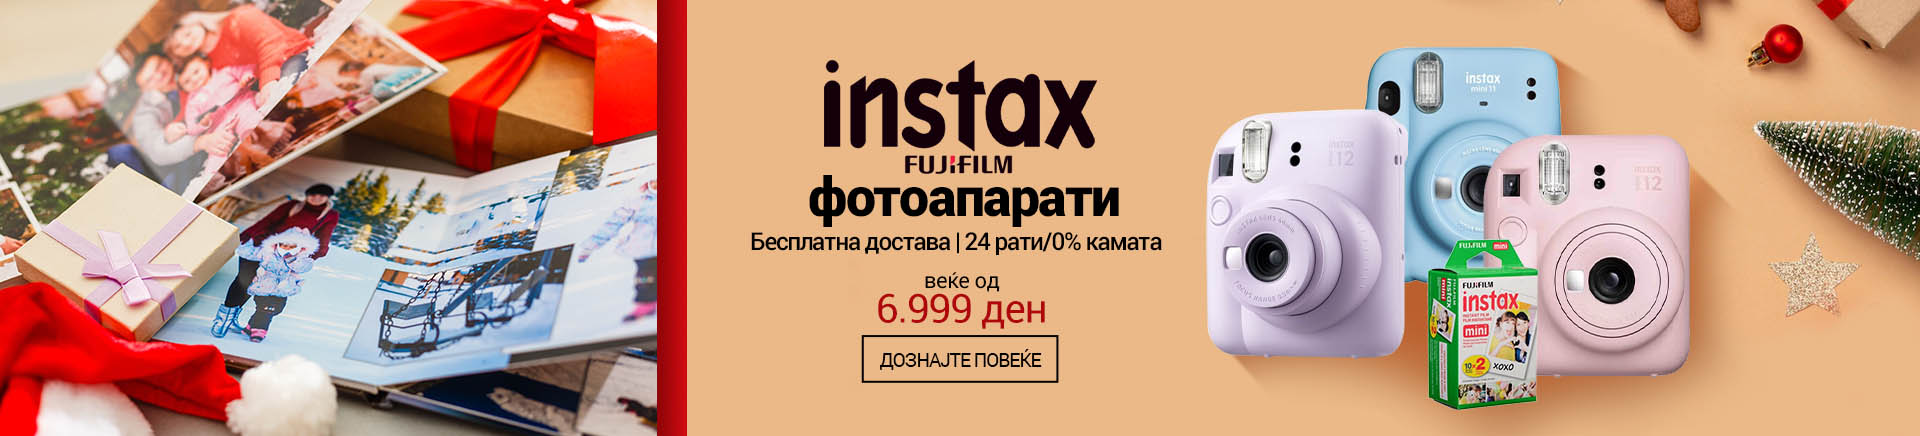 MK Fujiilm instax fotoaparati TABLET 768 X 436.jpg